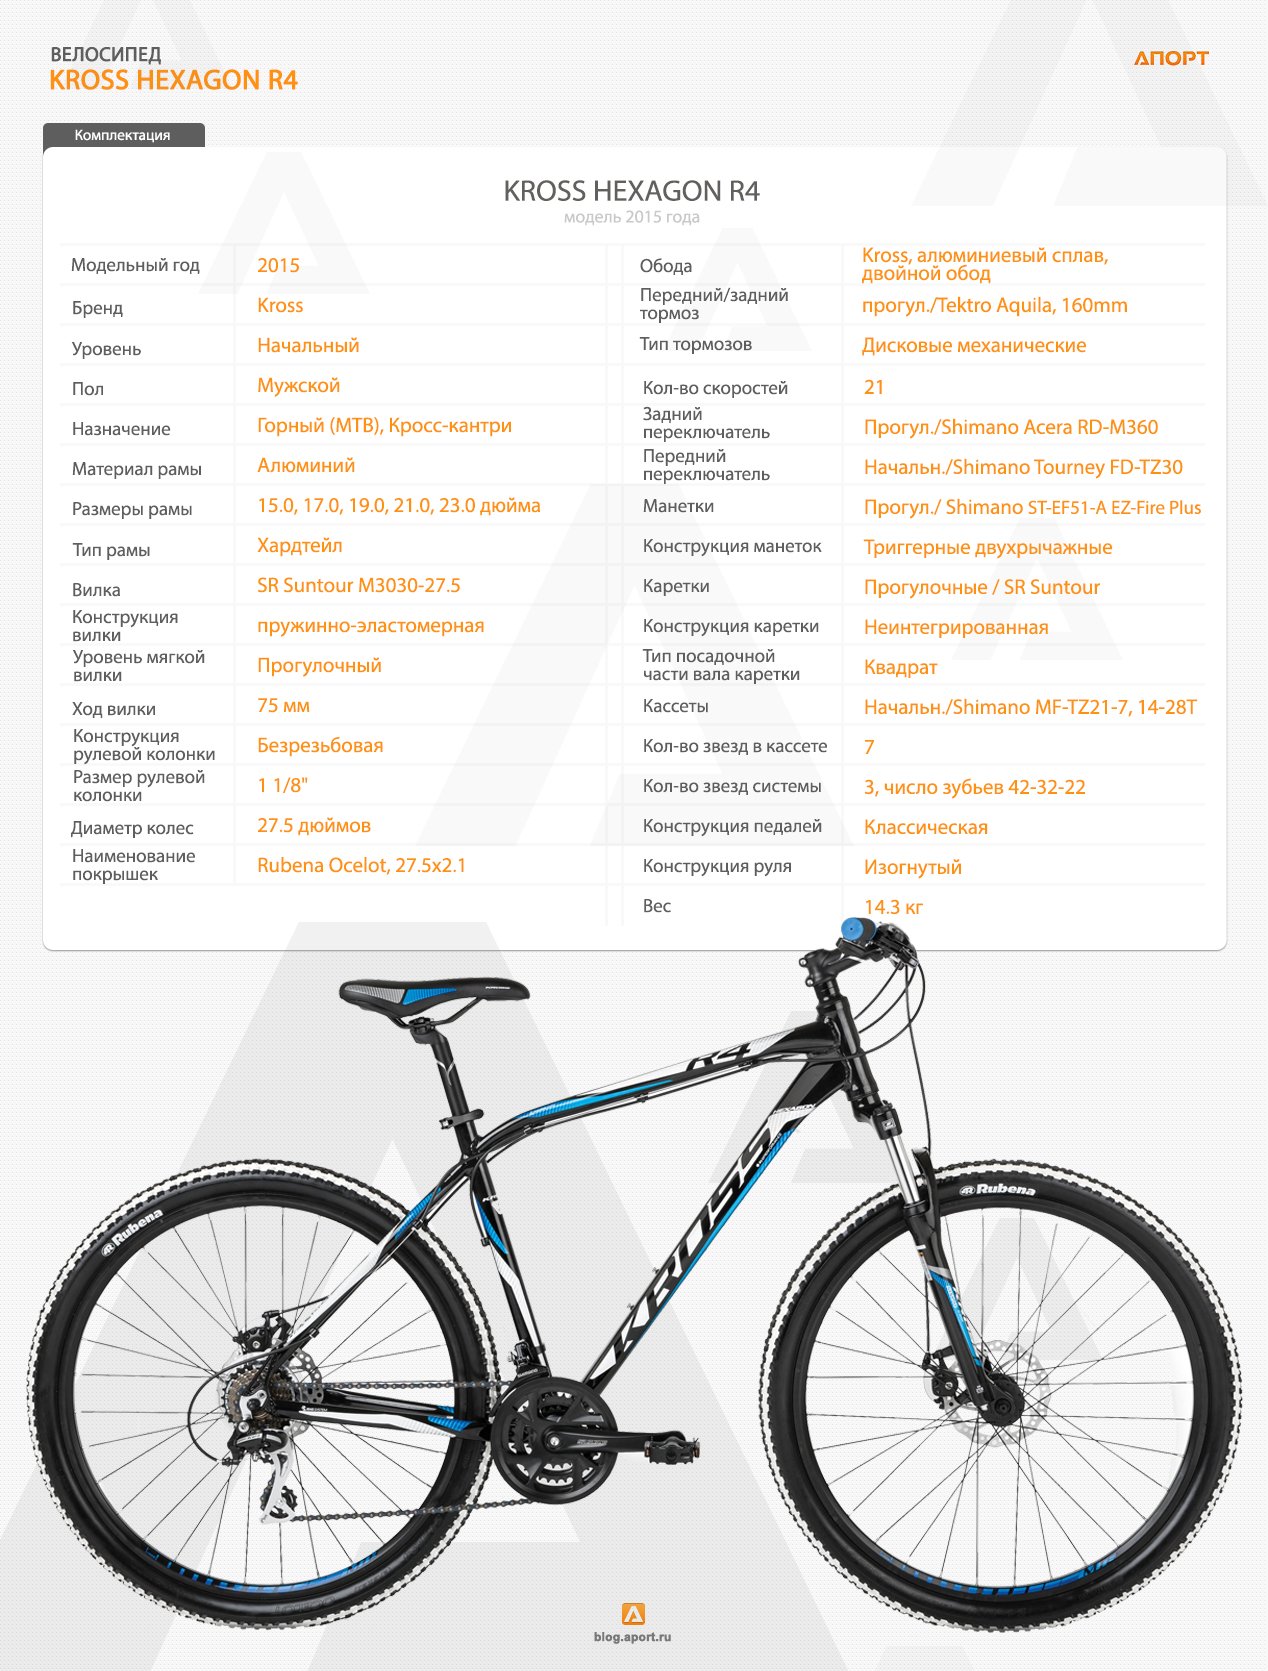 Какой велосипед купить на год. Характеристика велосипеда. Технические характеристики велосипеда. Название моделей велосипедов. Название форм велосипедов.